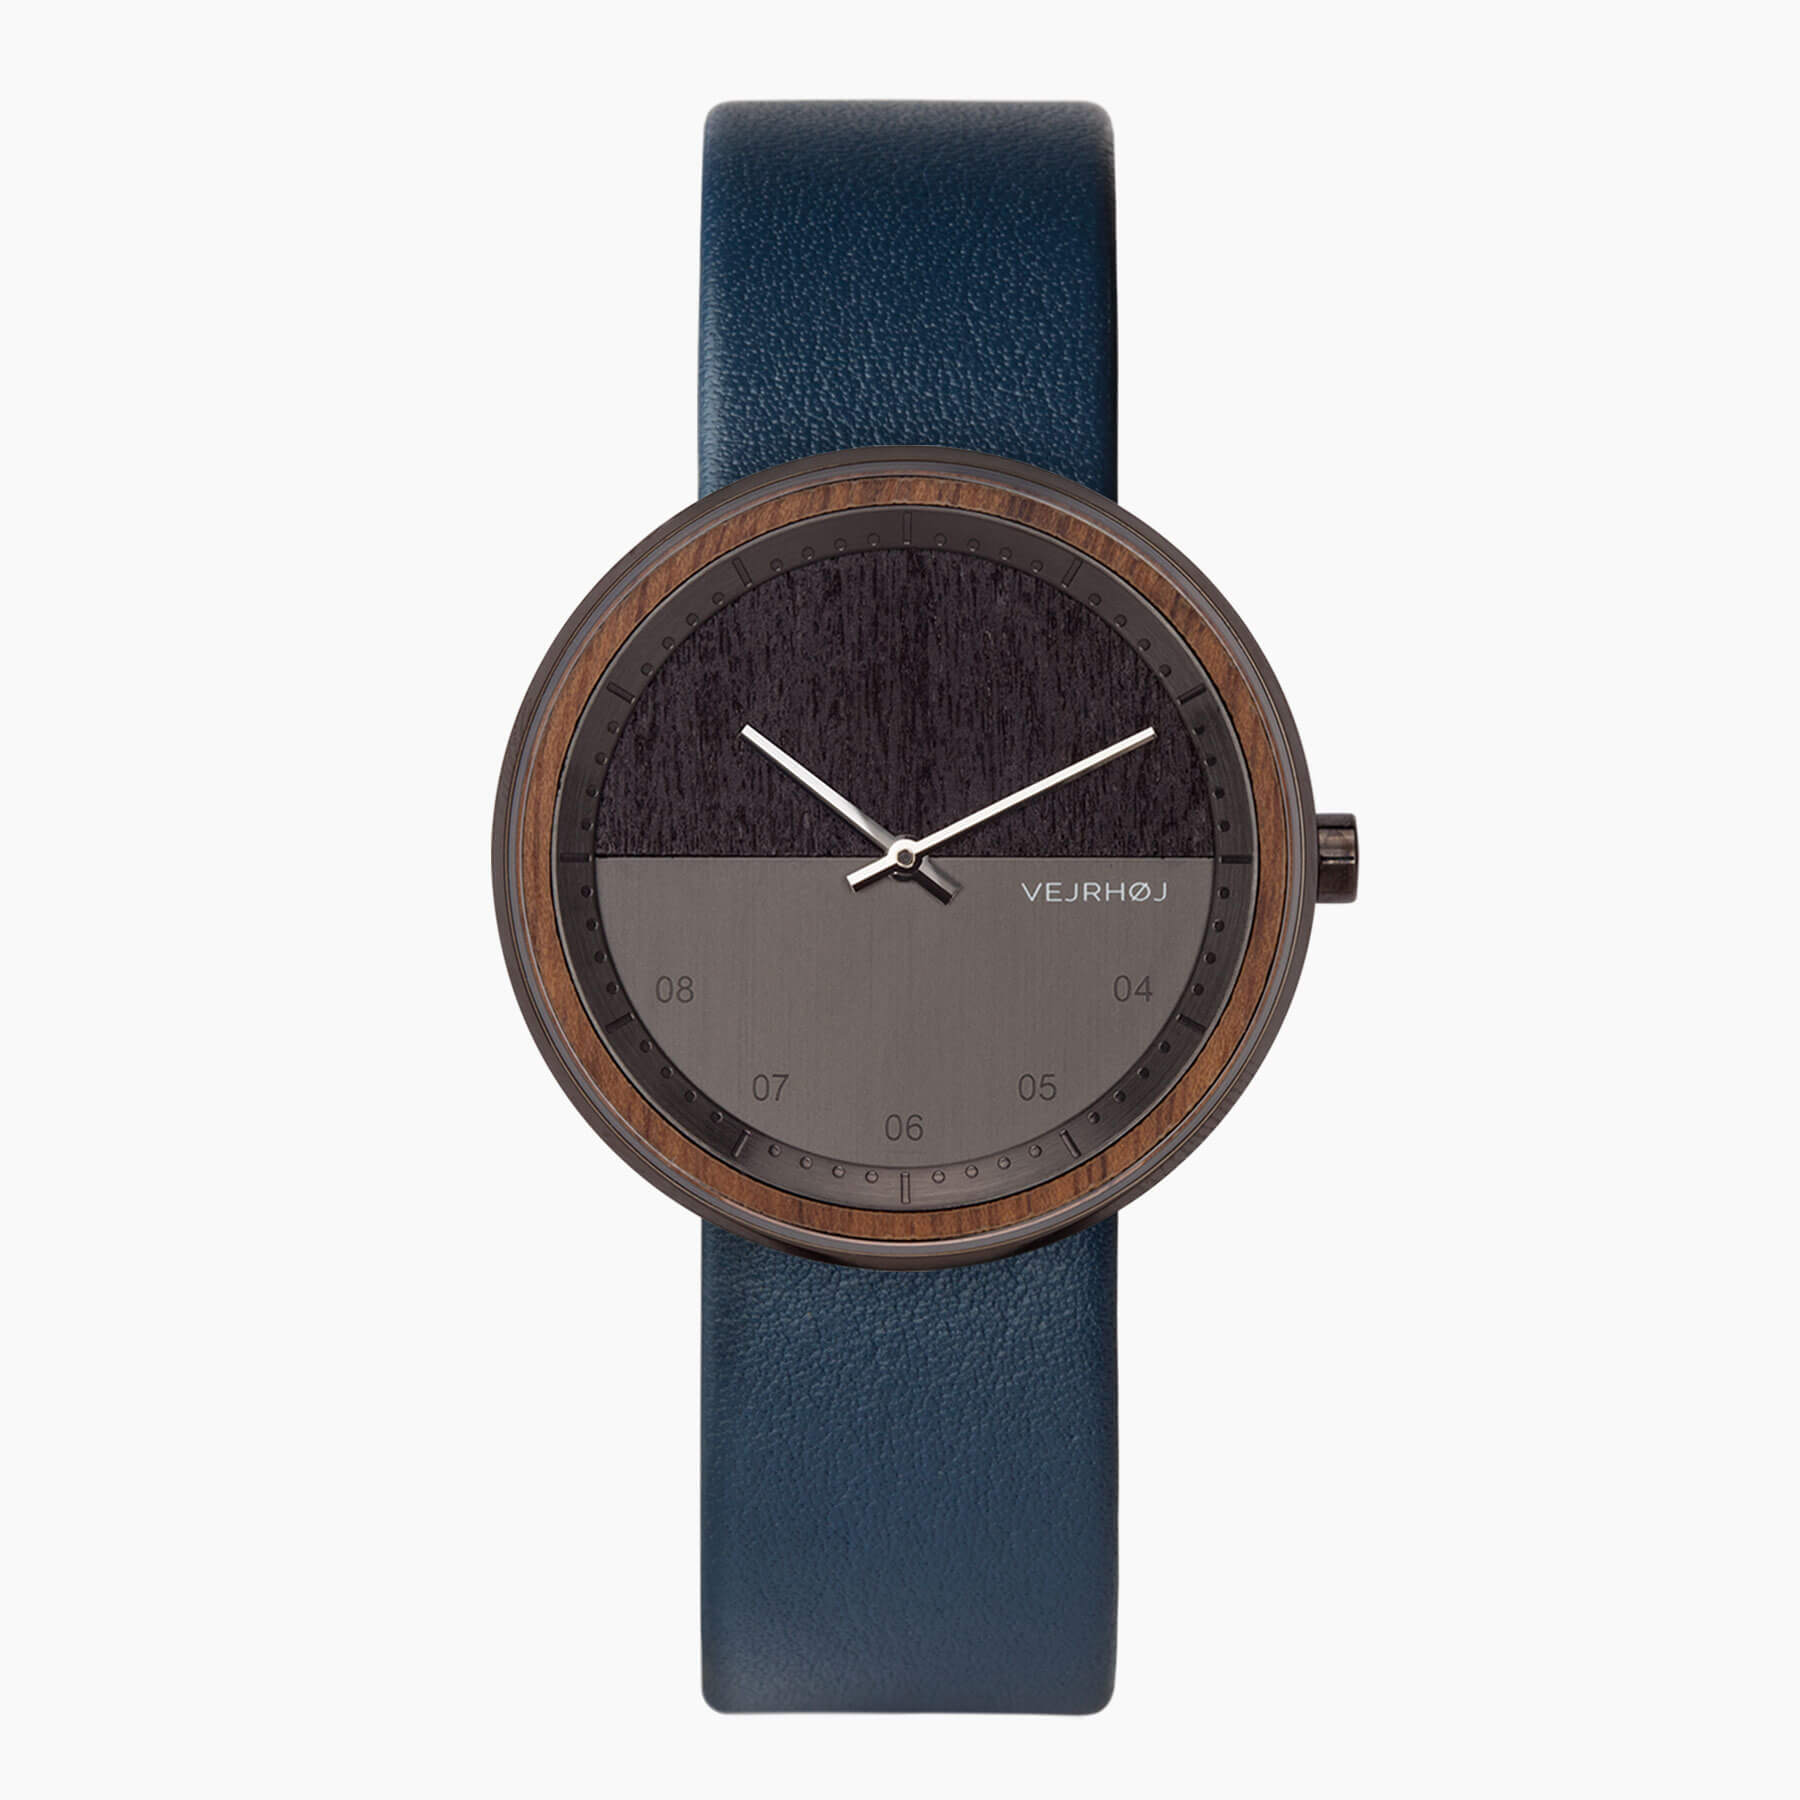 VEJRHØJ (ヴェアホイ) 北欧デザインの木製腕時計 - The NIGHT / 正面図  Edit alt text